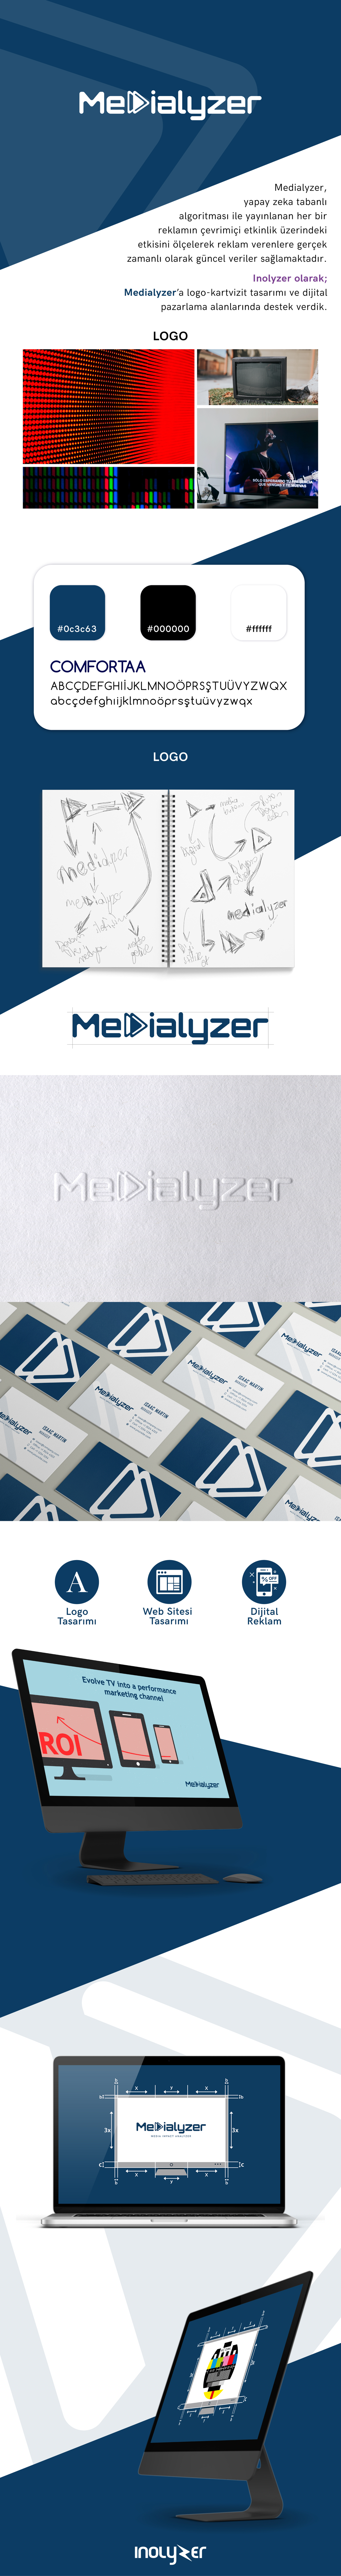 medialyzer